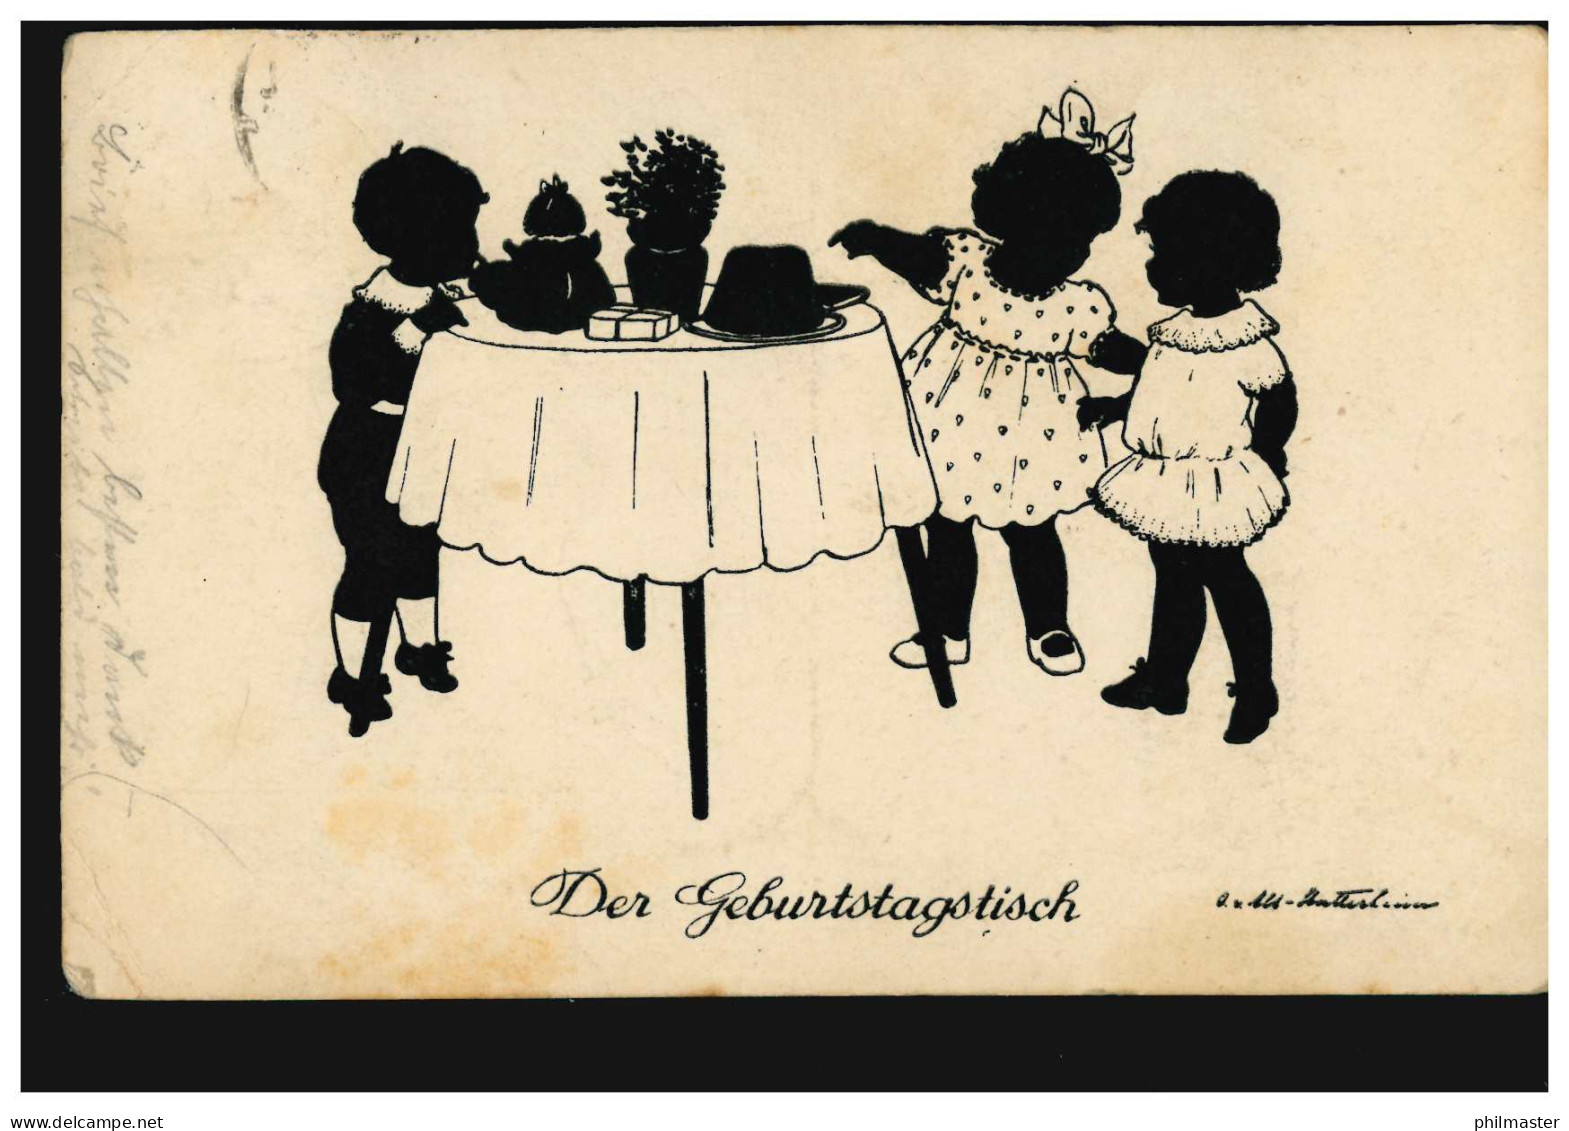 Scherenschnitt-AK Der Geburtstagstisch, Verlag G.K.V. Berlin, RHEYDT 23.6.1926 - Scherenschnitt - Silhouette